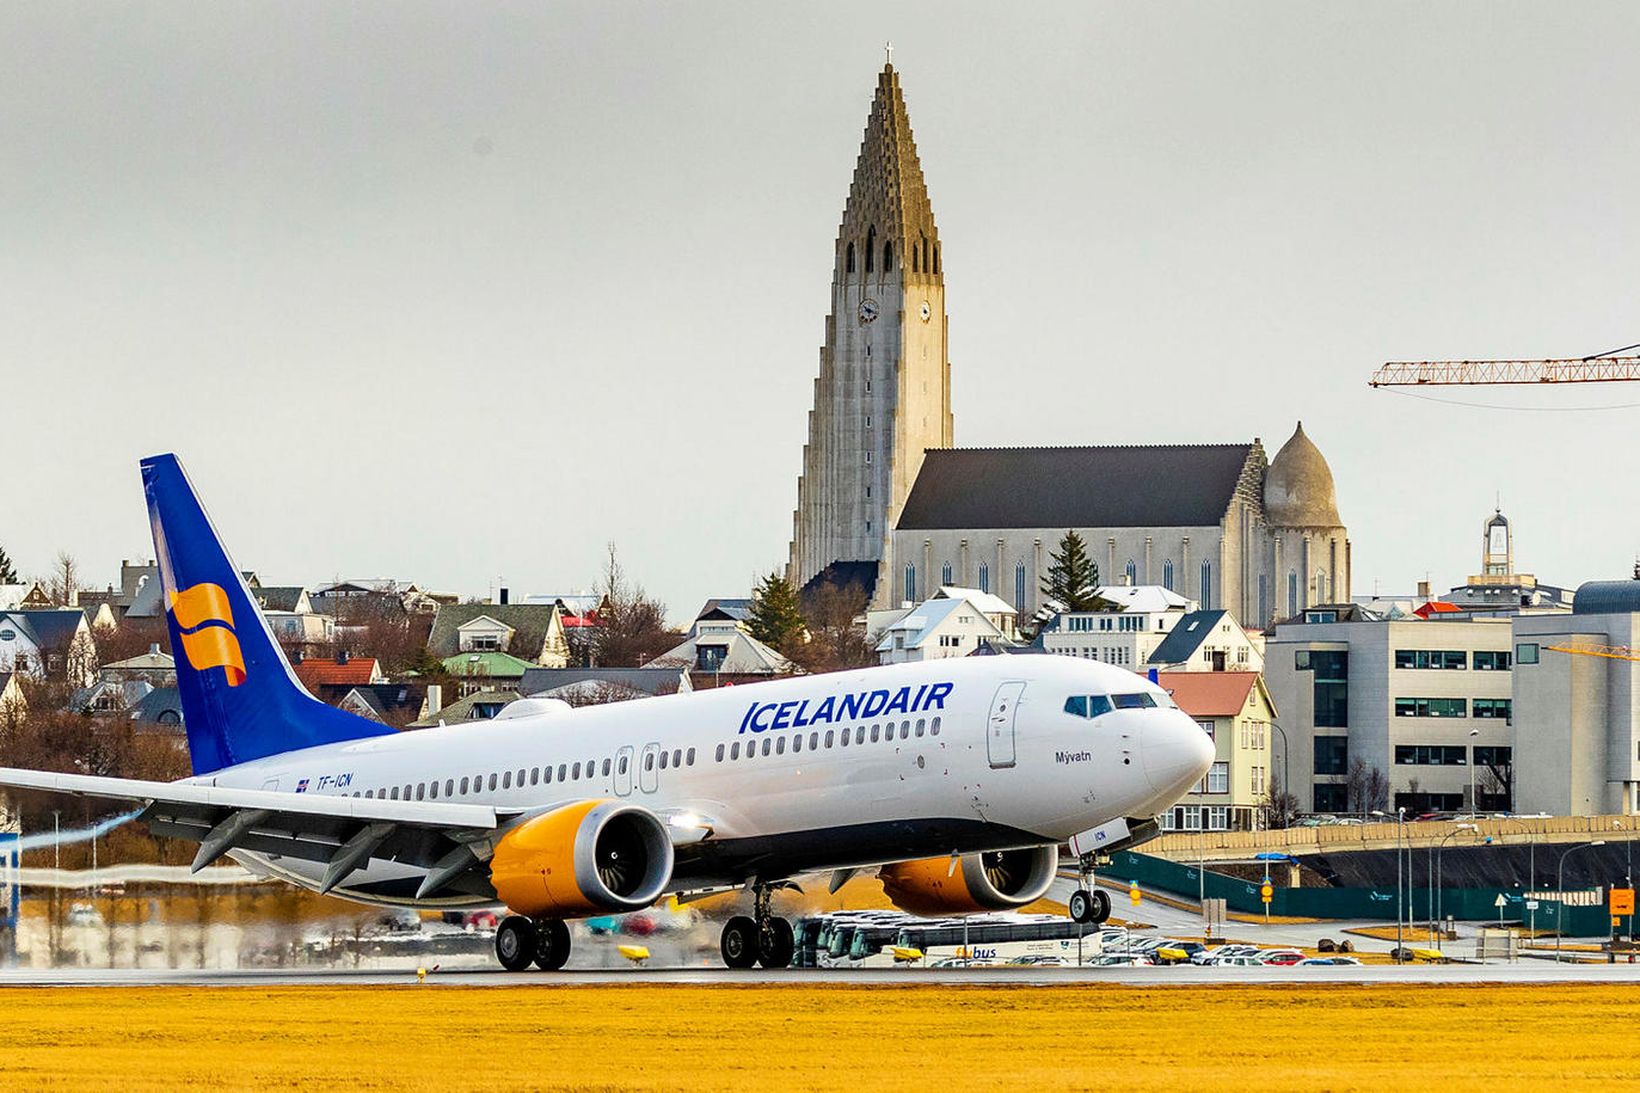 Icelandair hefur gefið út áætlun sína fyrir sumarið 2022.